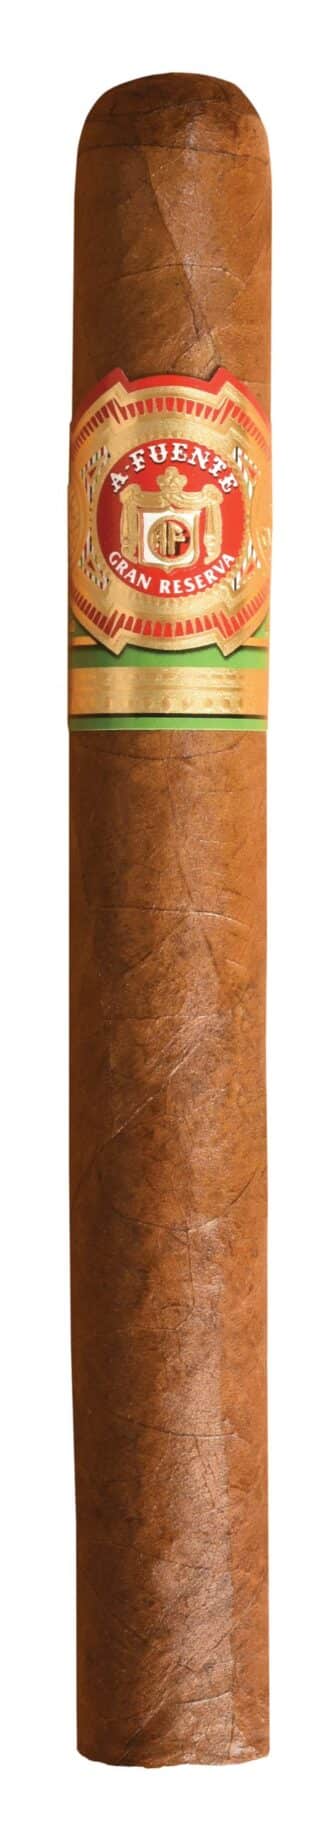 arturo fuente 8 5 8 natural single cigar